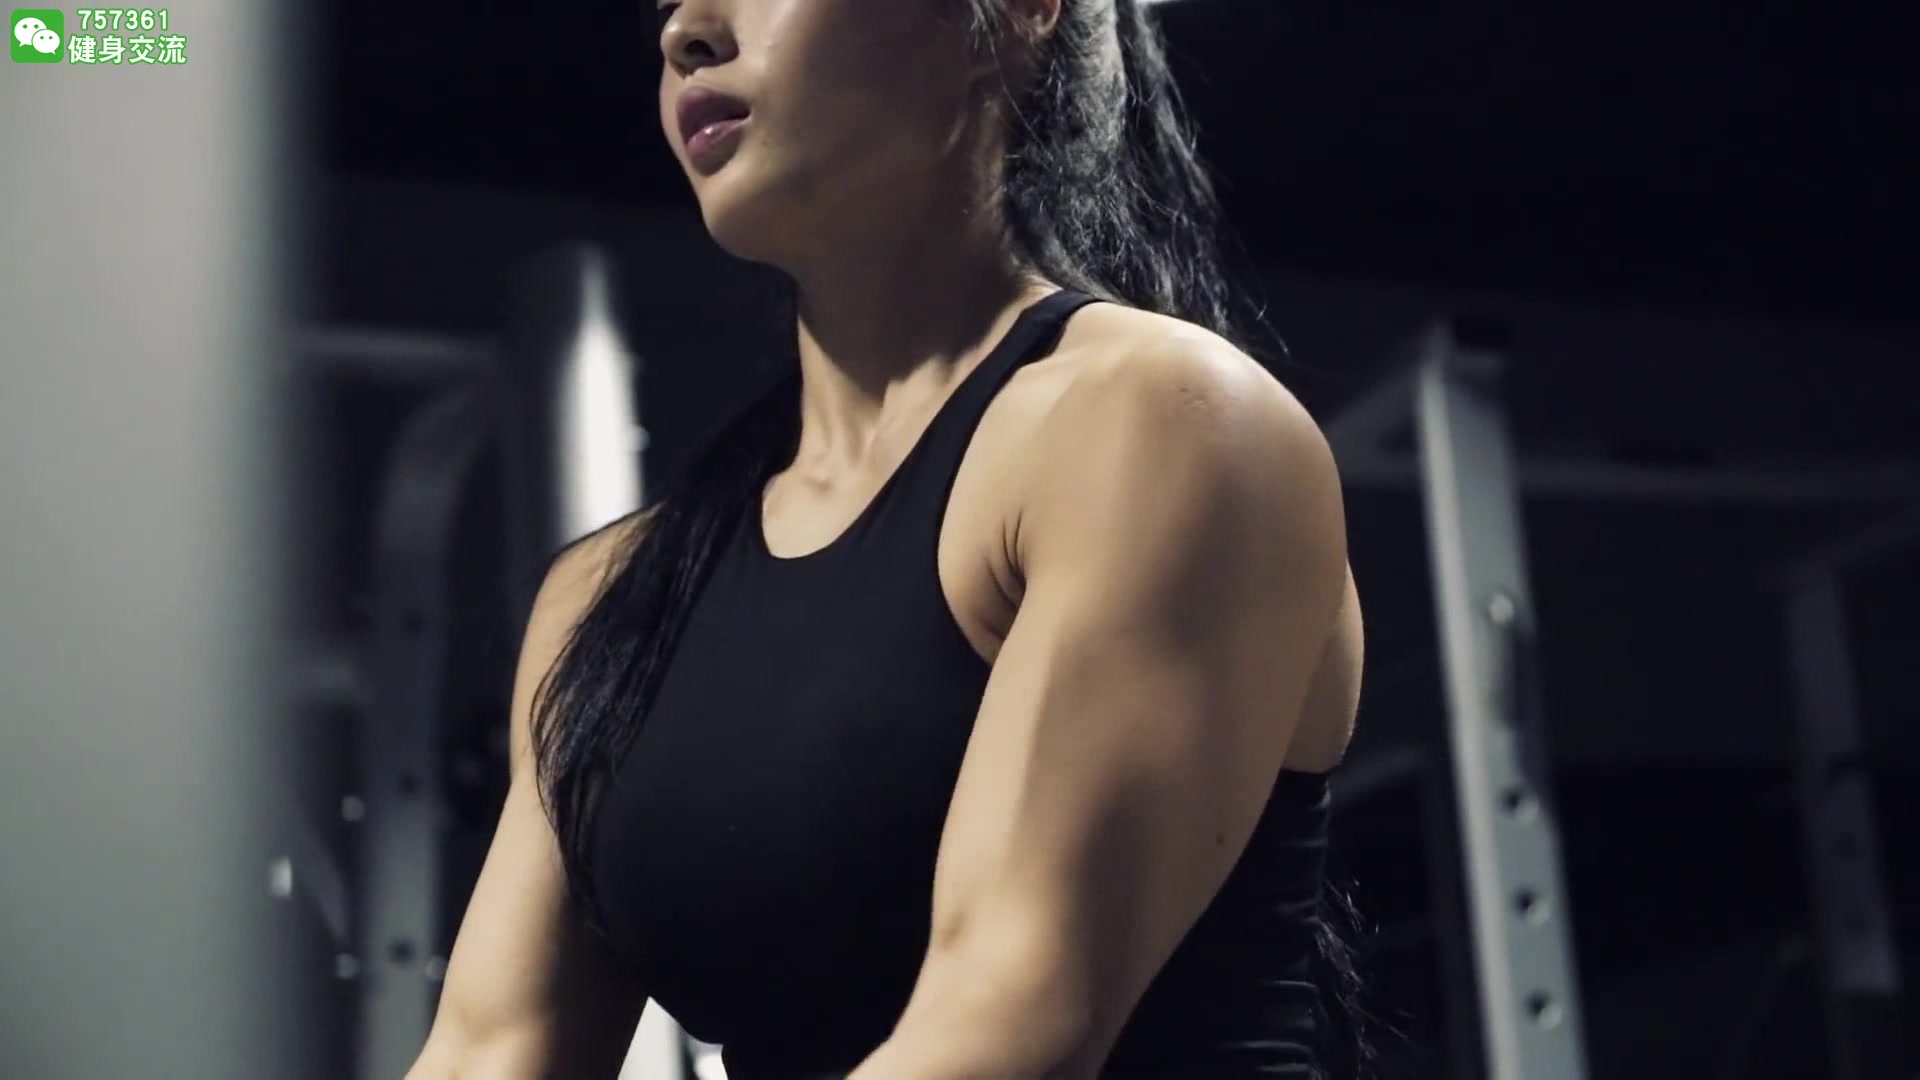 【老沈健美】韩国美女健身励志视频